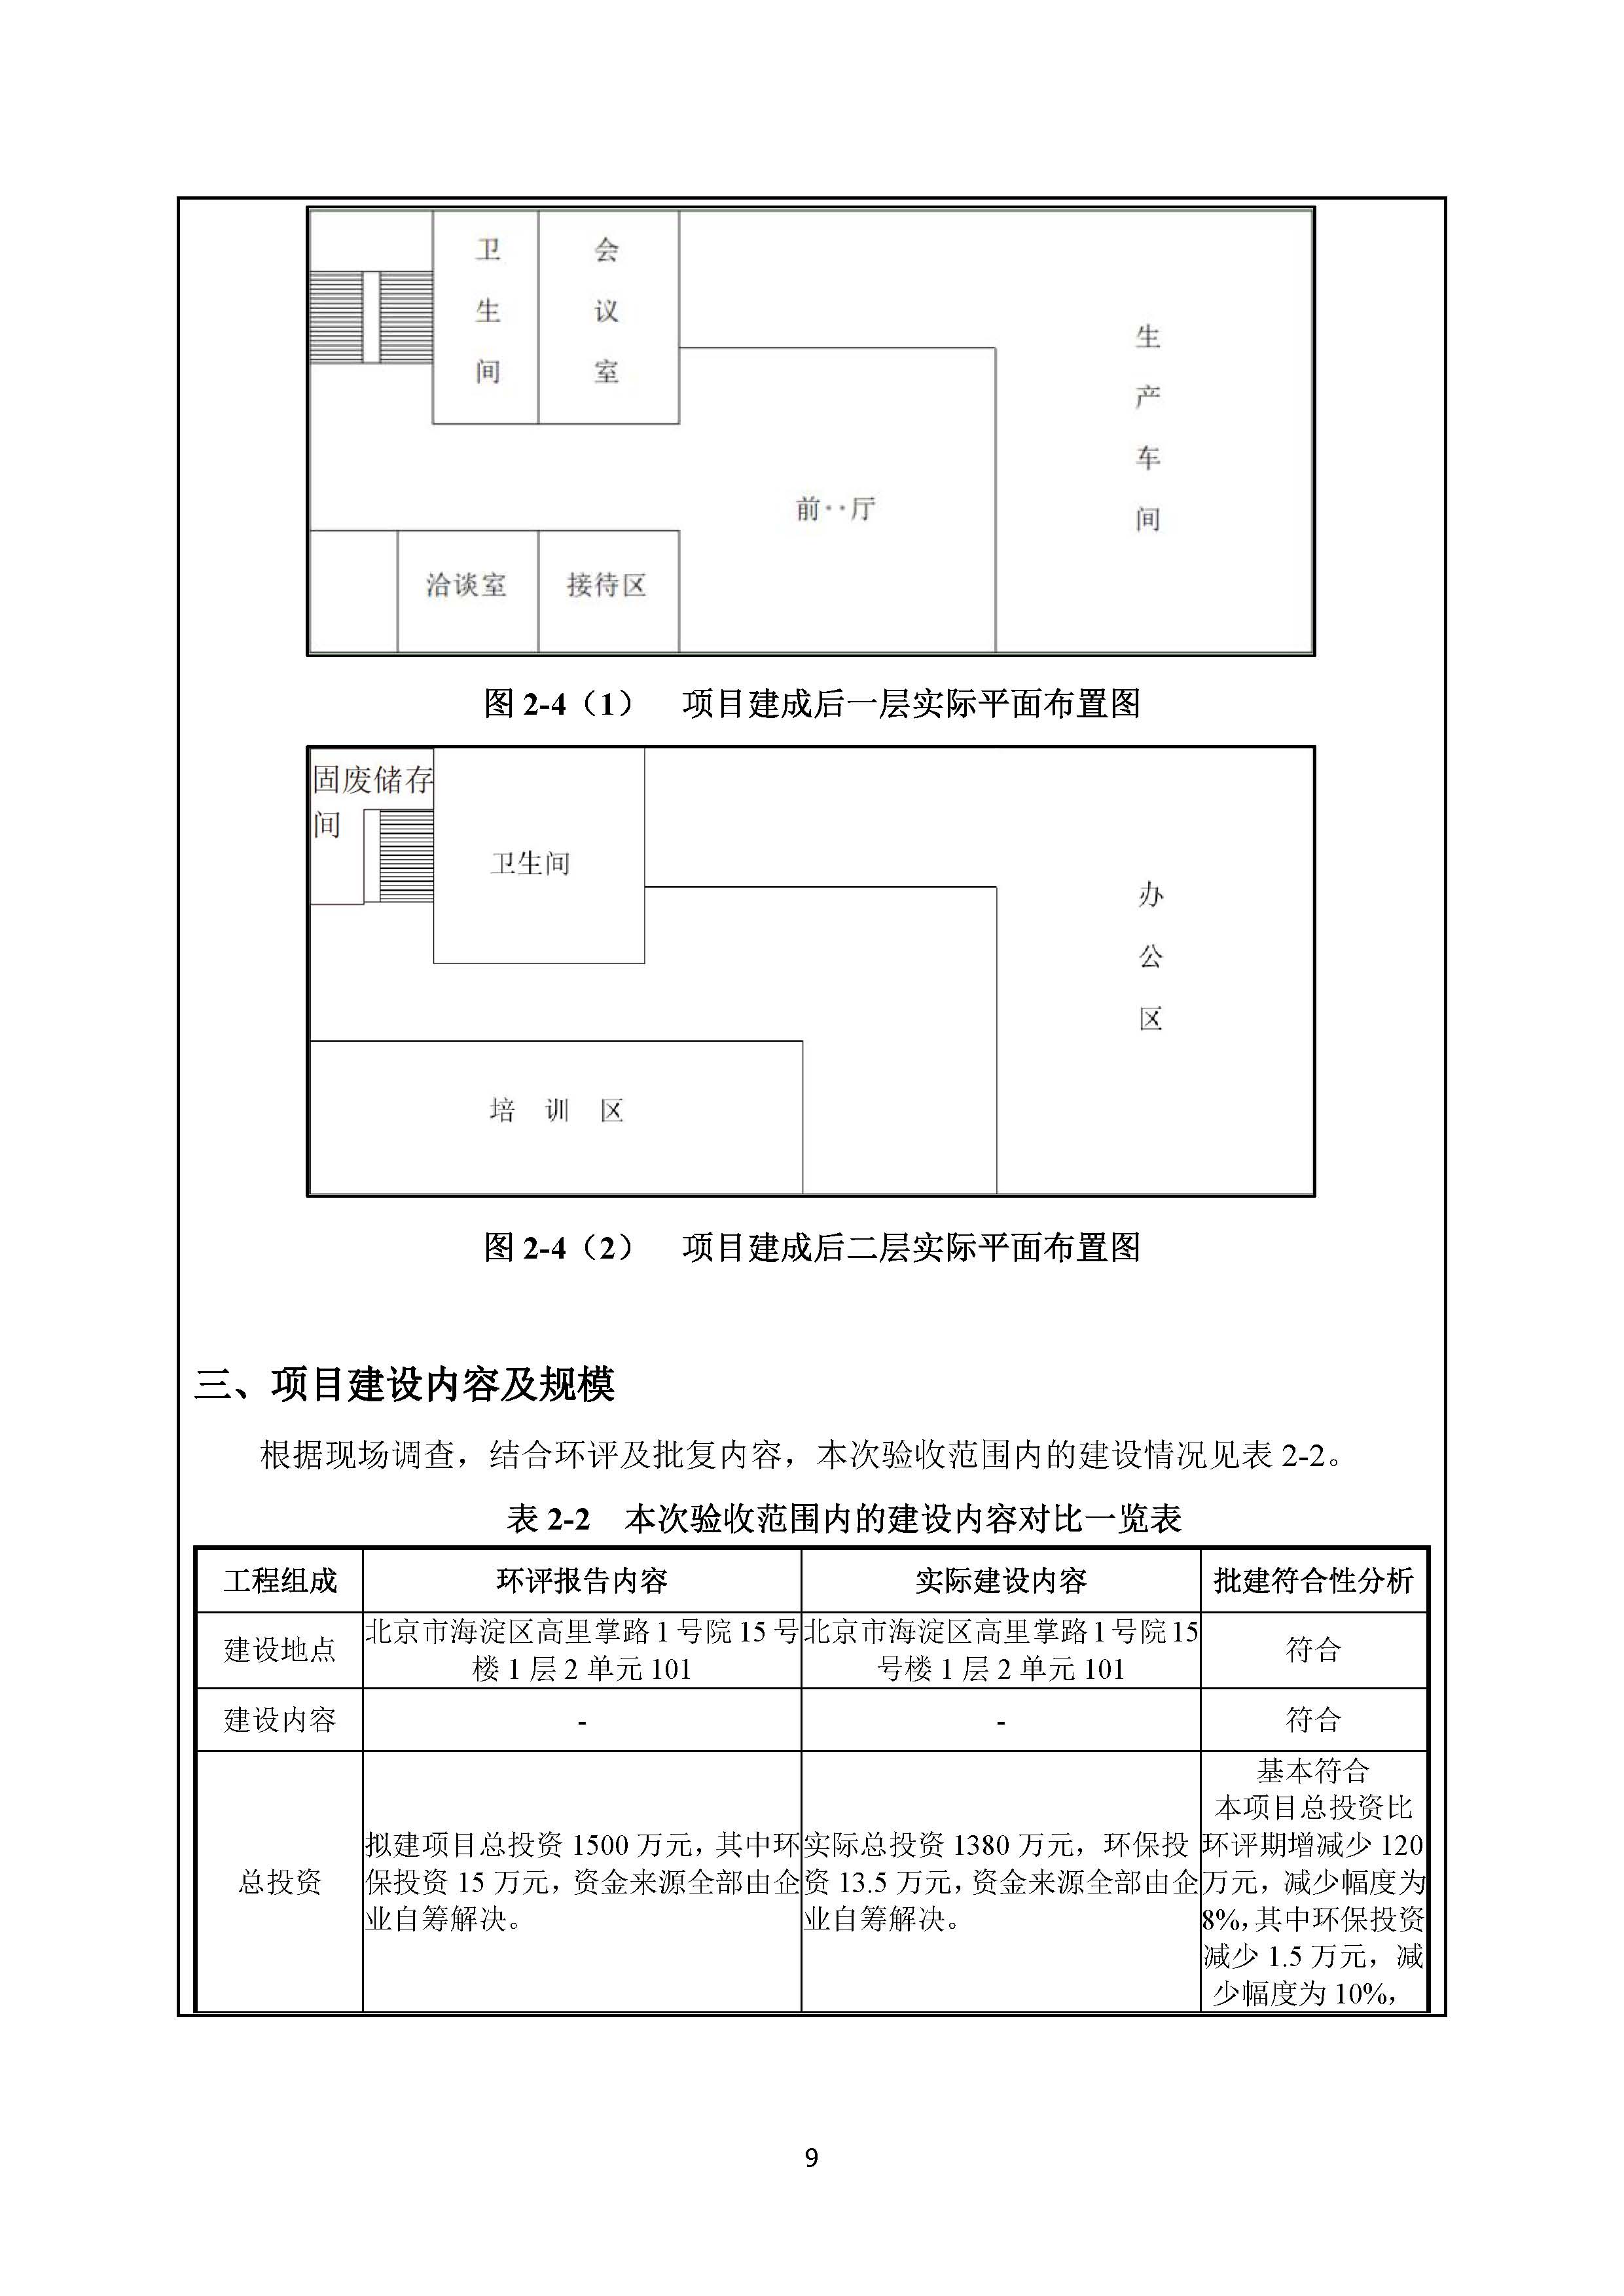 北京博瑞莱智能科技集团有限公司项目竣工环境保护验收监测报告全本公示(图13)